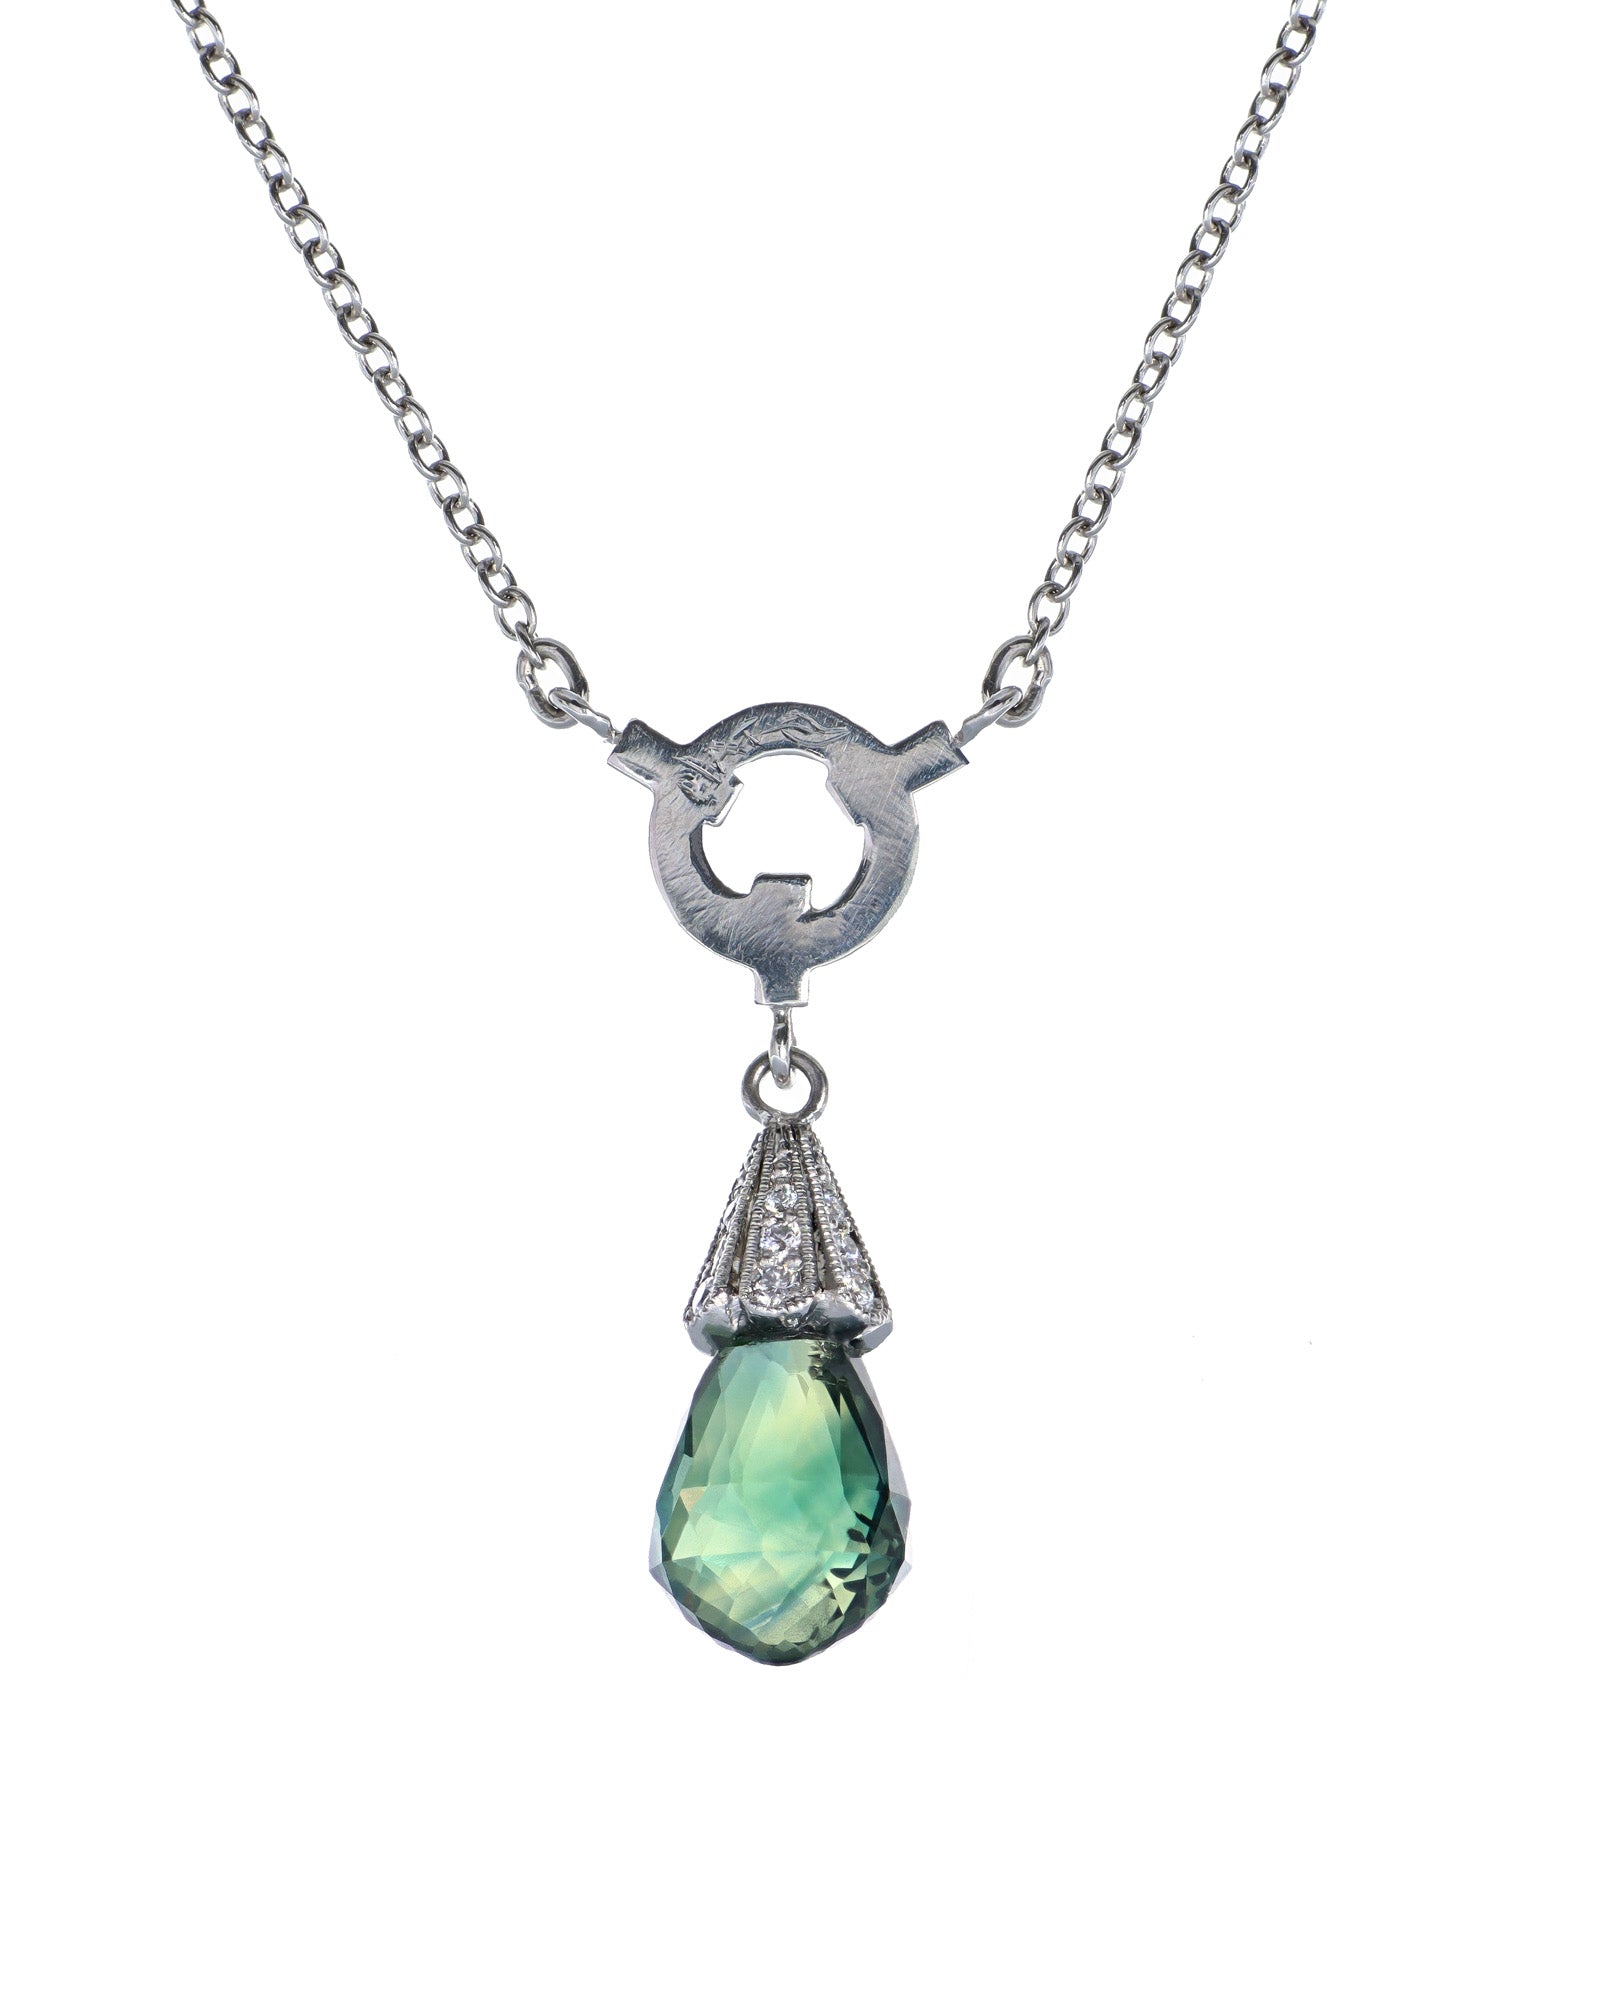 Briolette Sapphire Necklace